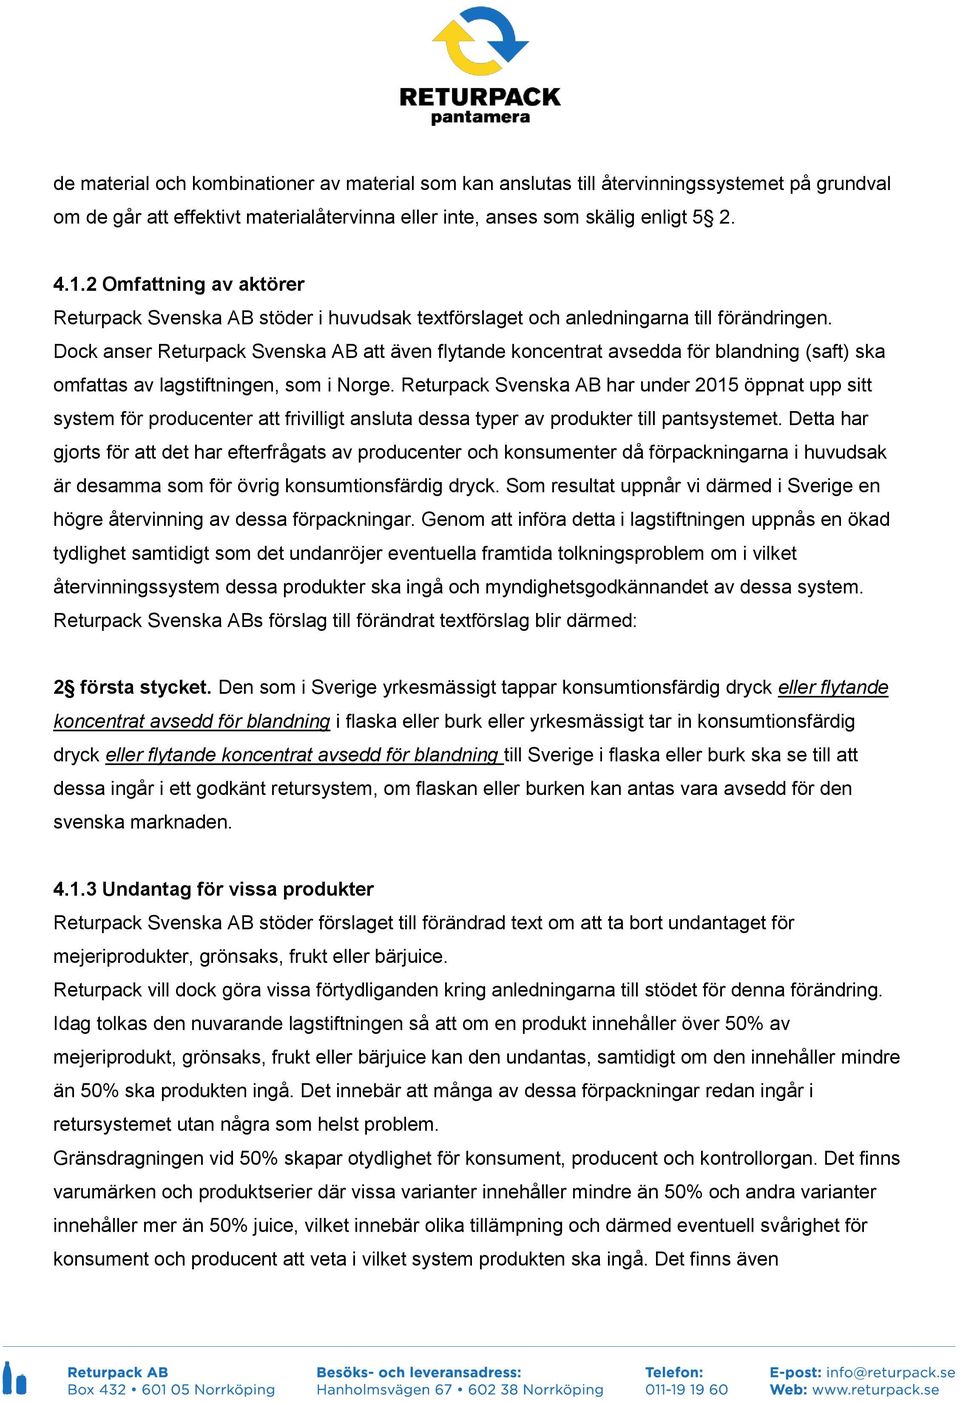 Dock anser Returpack Svenska AB att även flytande koncentrat avsedda för blandning (saft) ska omfattas av lagstiftningen, som i Norge.